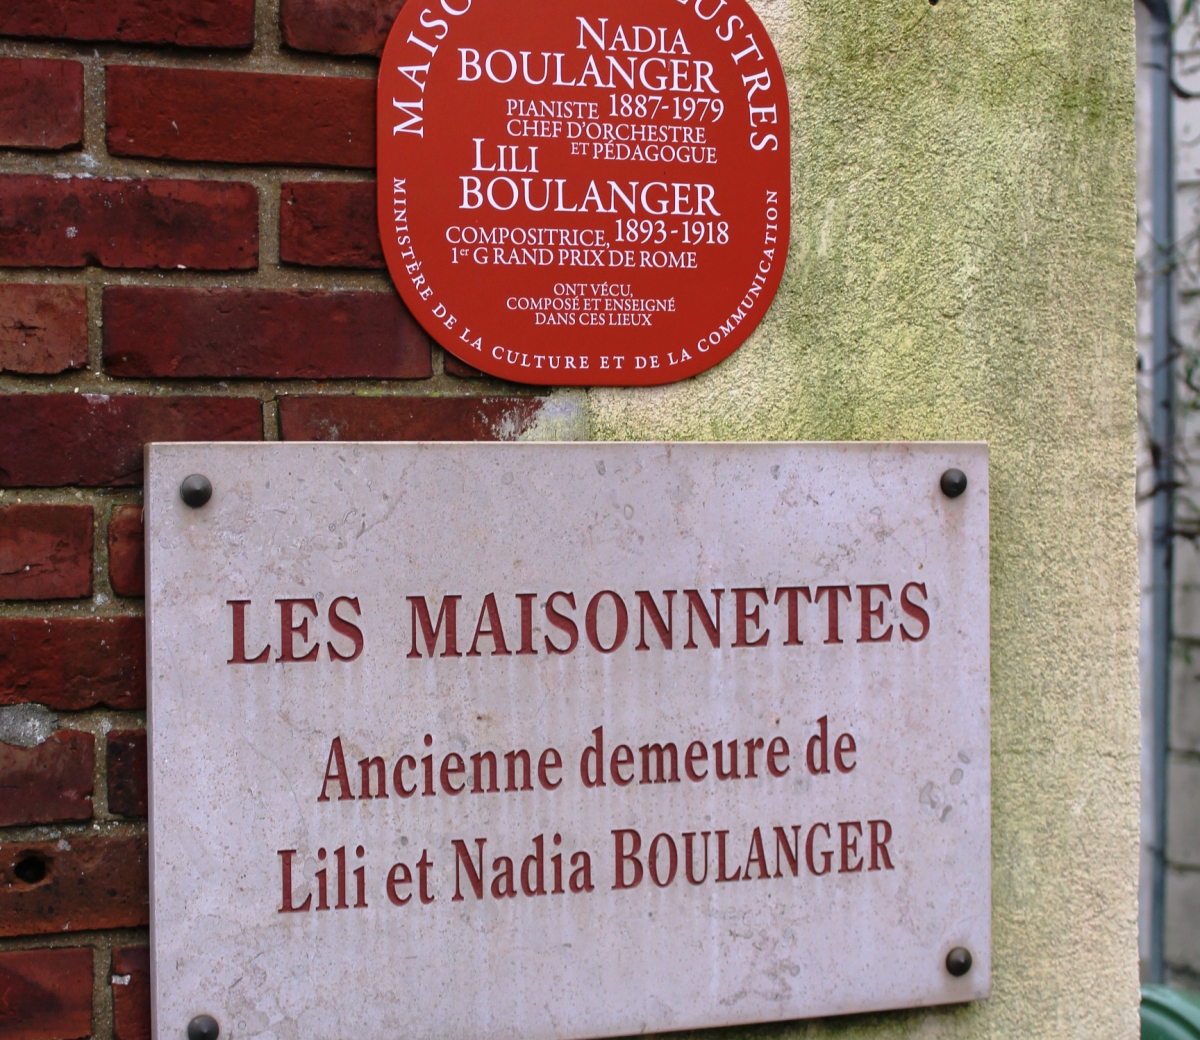 Plaque Maison des illustres de la demeure des soeurs Lili et Nadia Boulanger